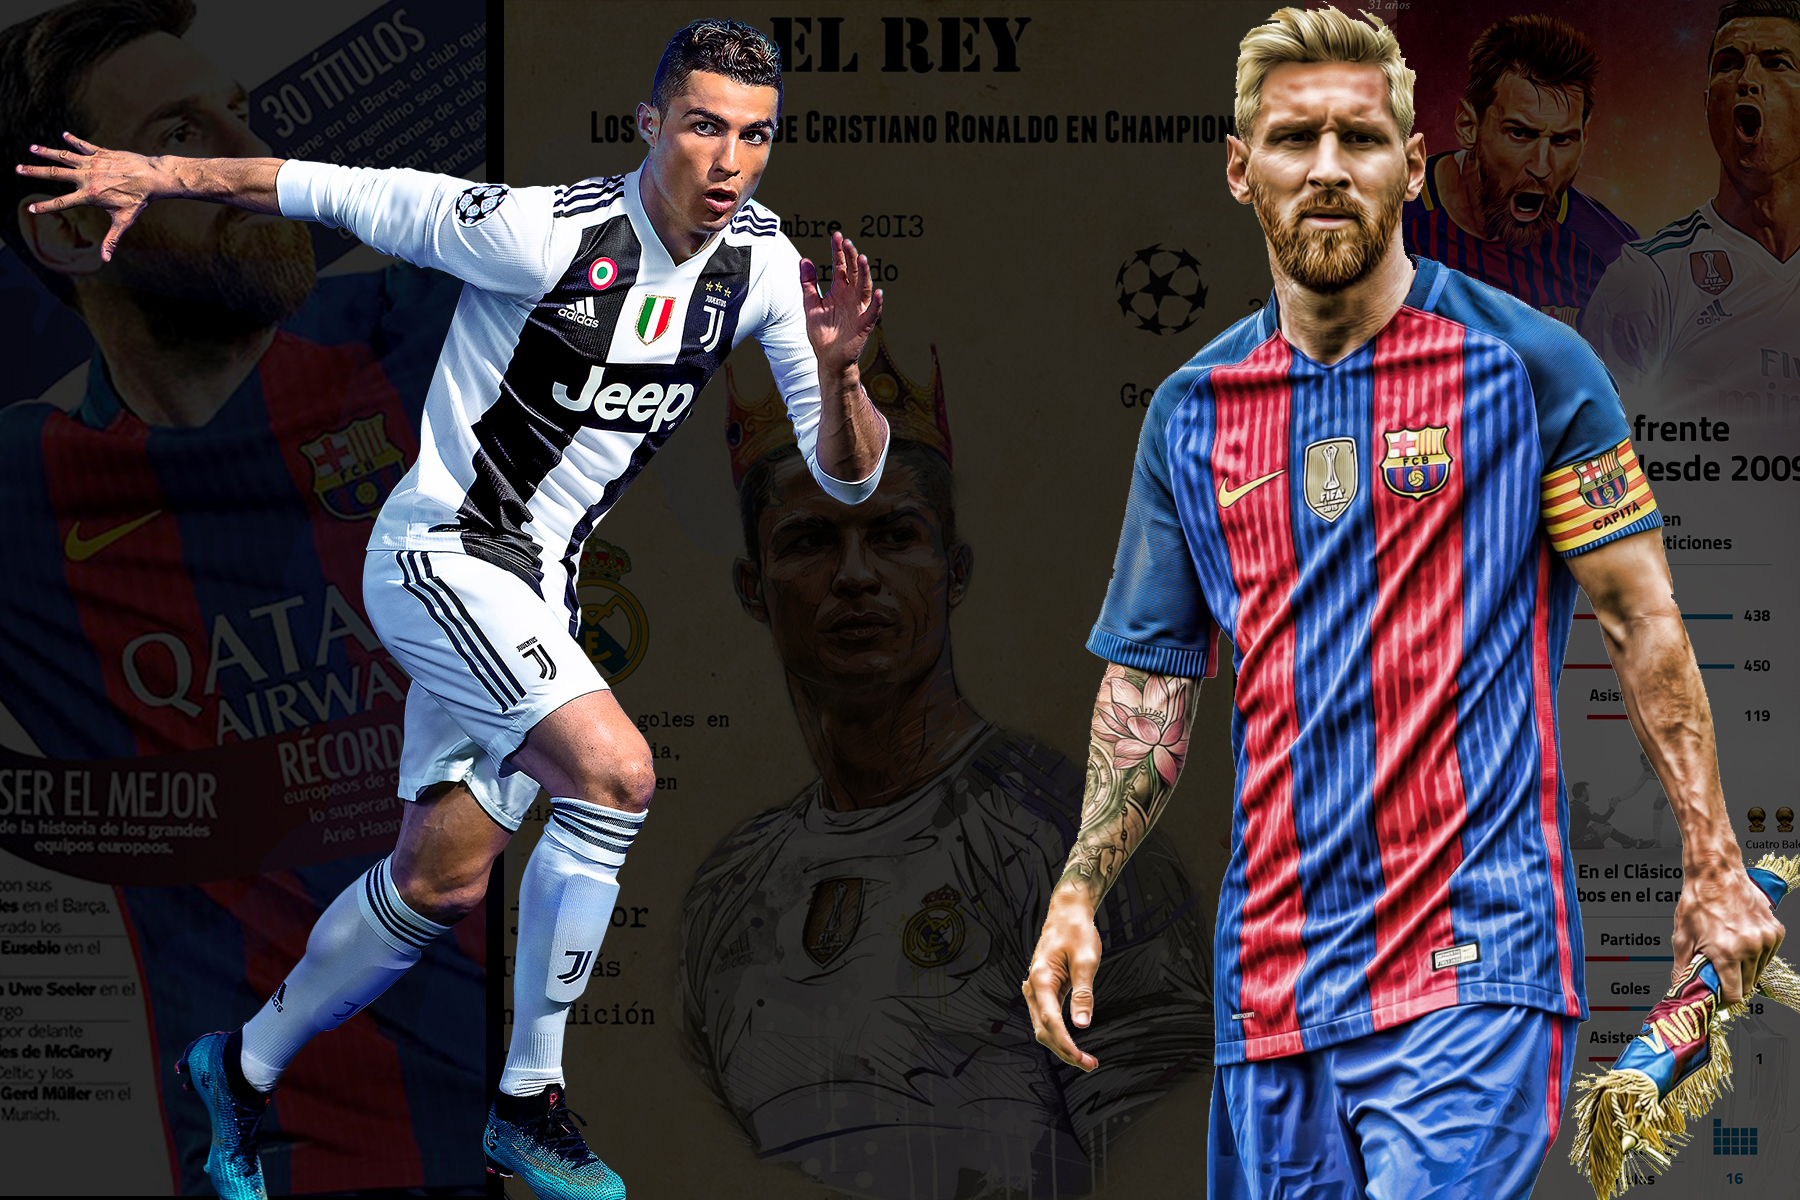  Los 5 mejores jugadores de la historia del fútbol 